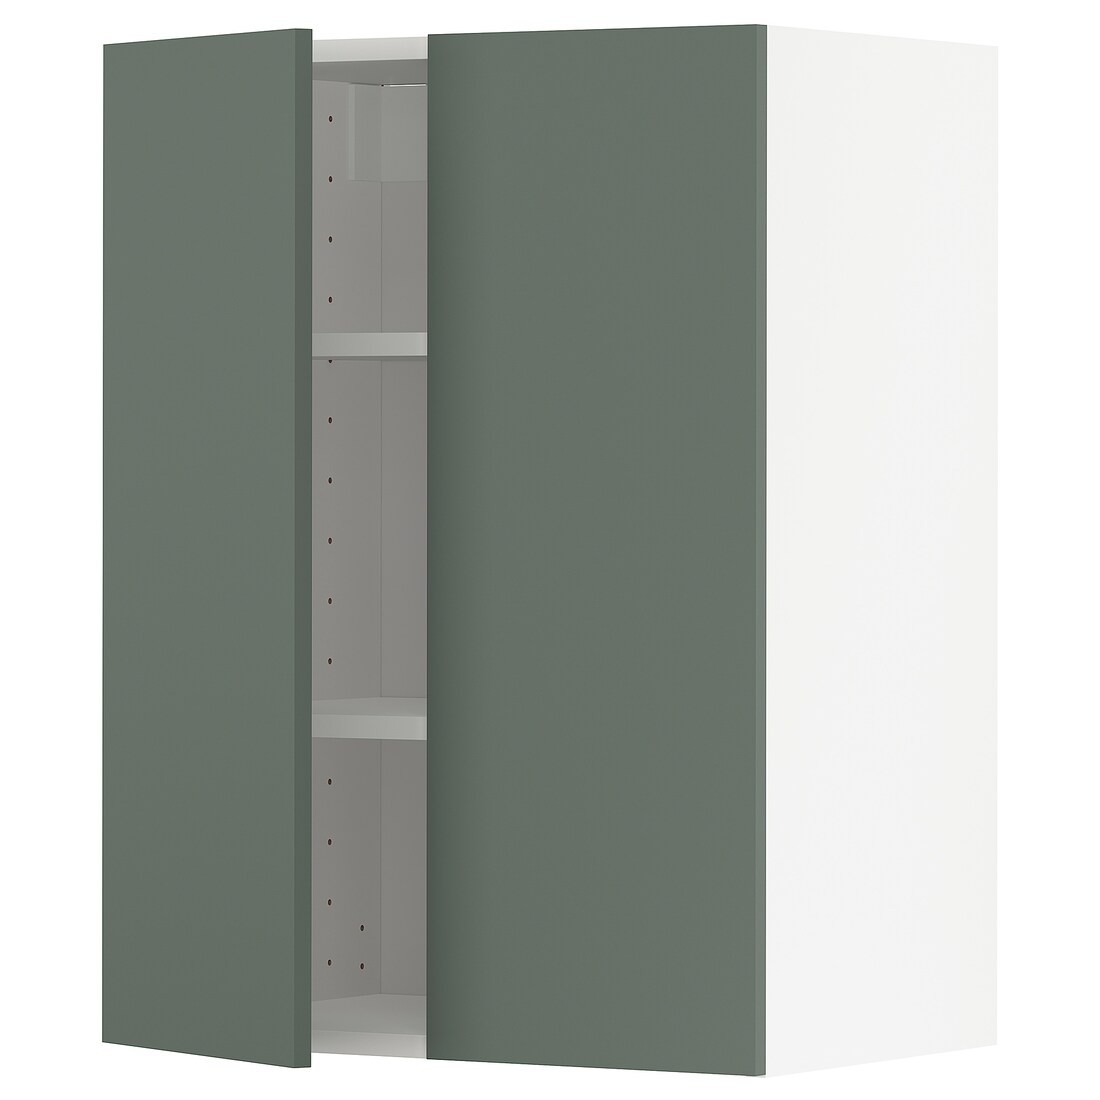 METOD МЕТОД Навесной шкаф с полками / 2 дверцы, белый / Bodarp серо-зеленый, 60x80 см